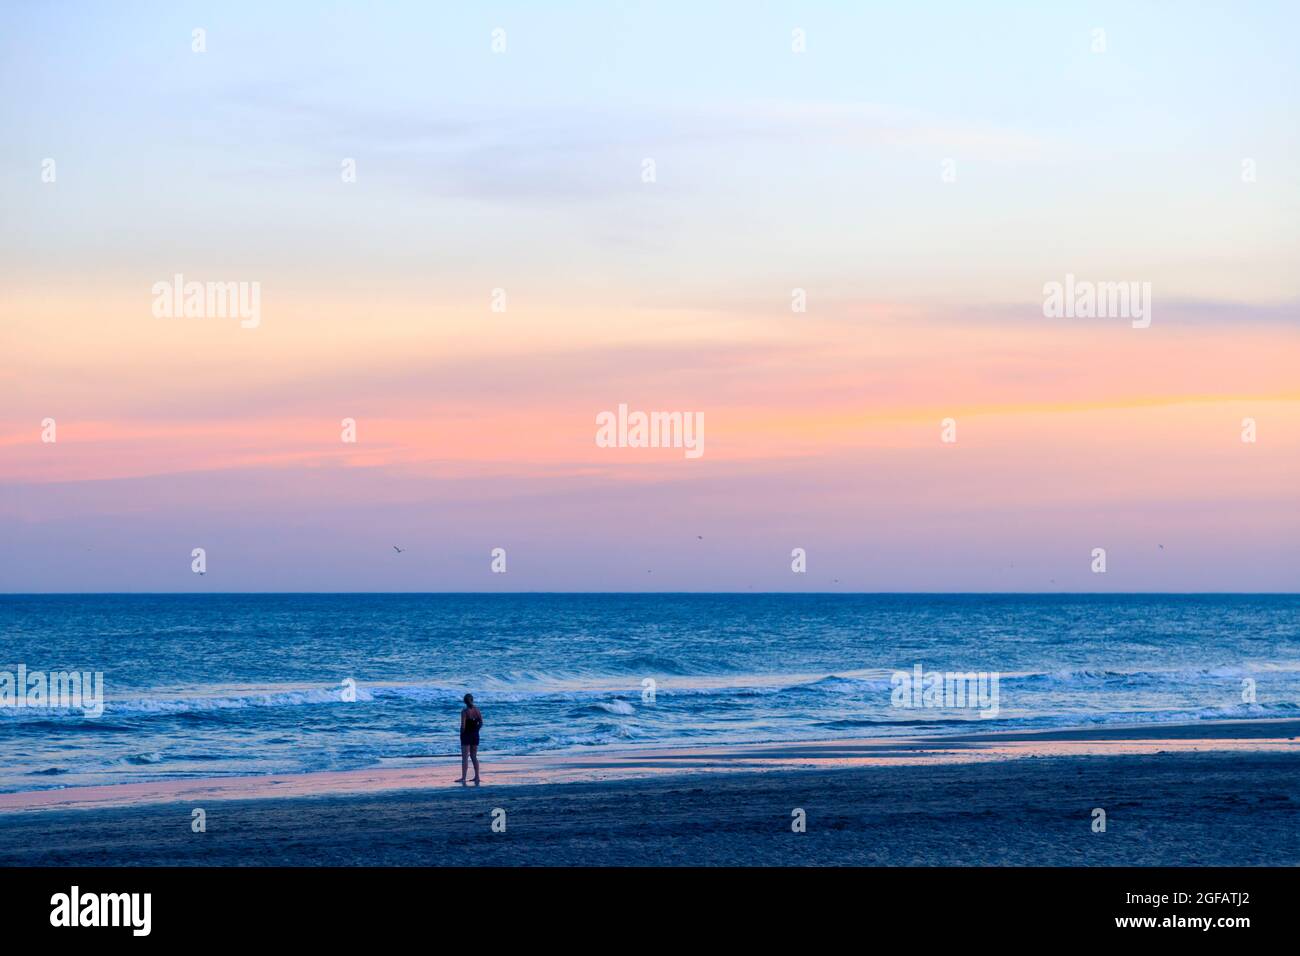 Junge Frau am Strand, die beim Sonnenuntergang das Meer beobachtet. Mar de las Pampas, Buenos Aires, Argentinien. Inspirierendes Bild. Stockfoto